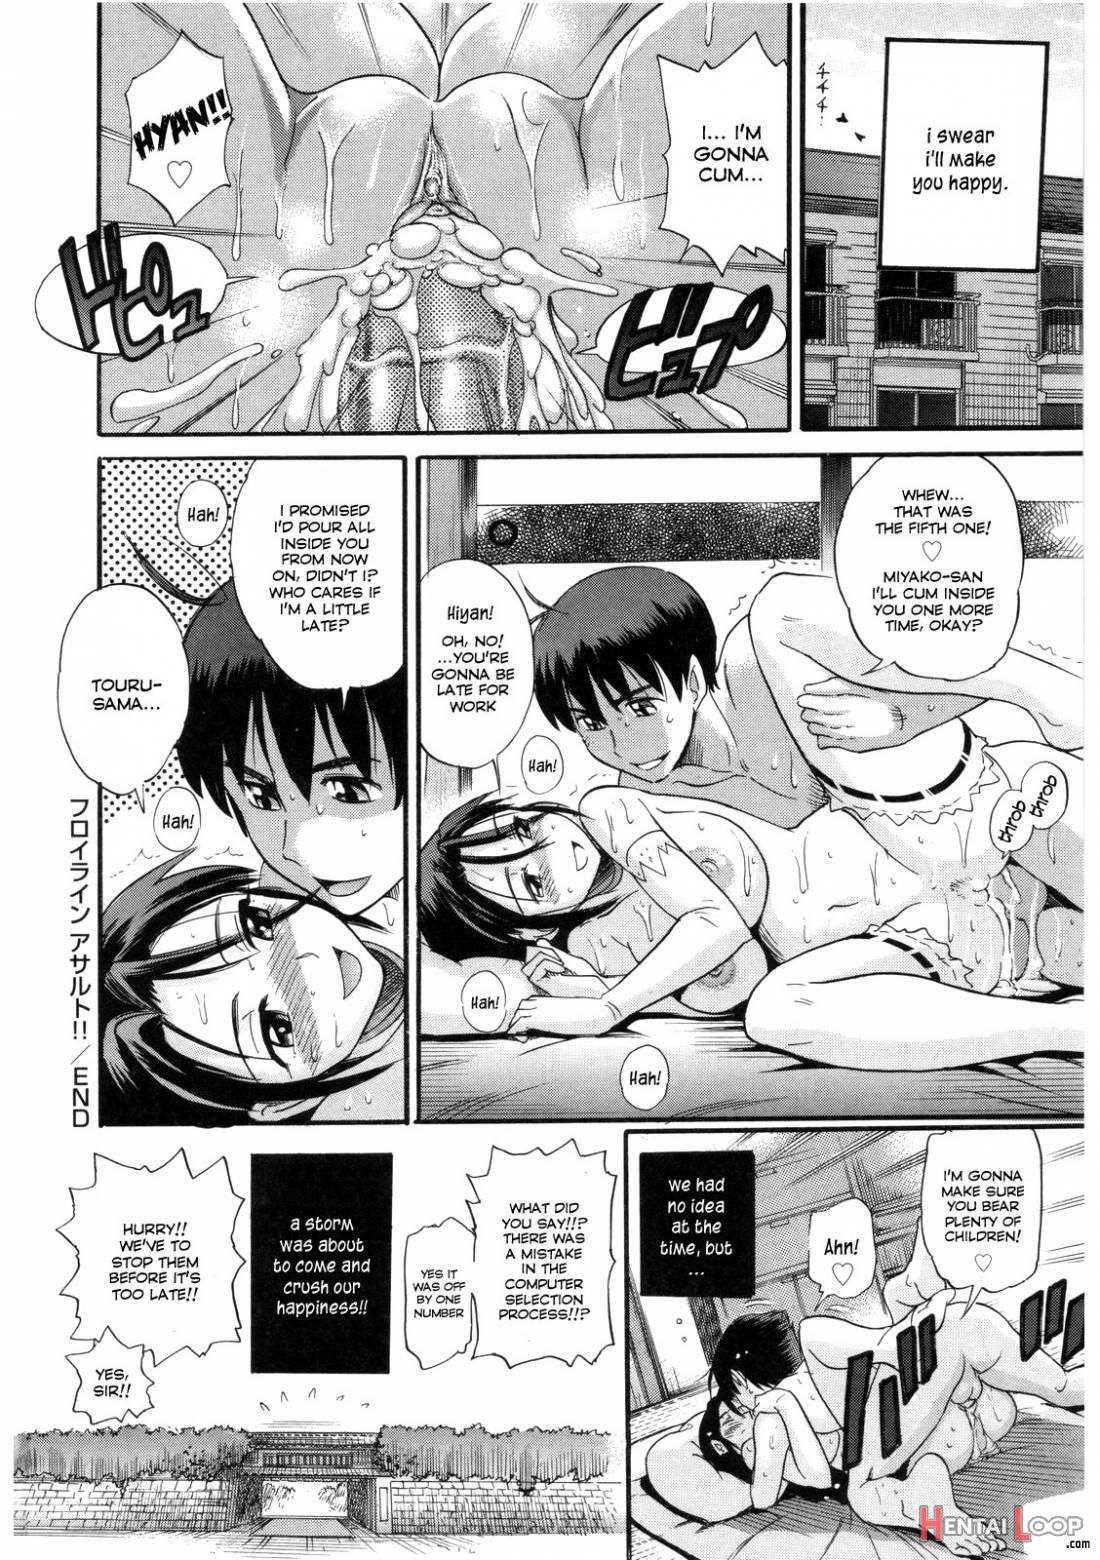 B-Chiku page 34